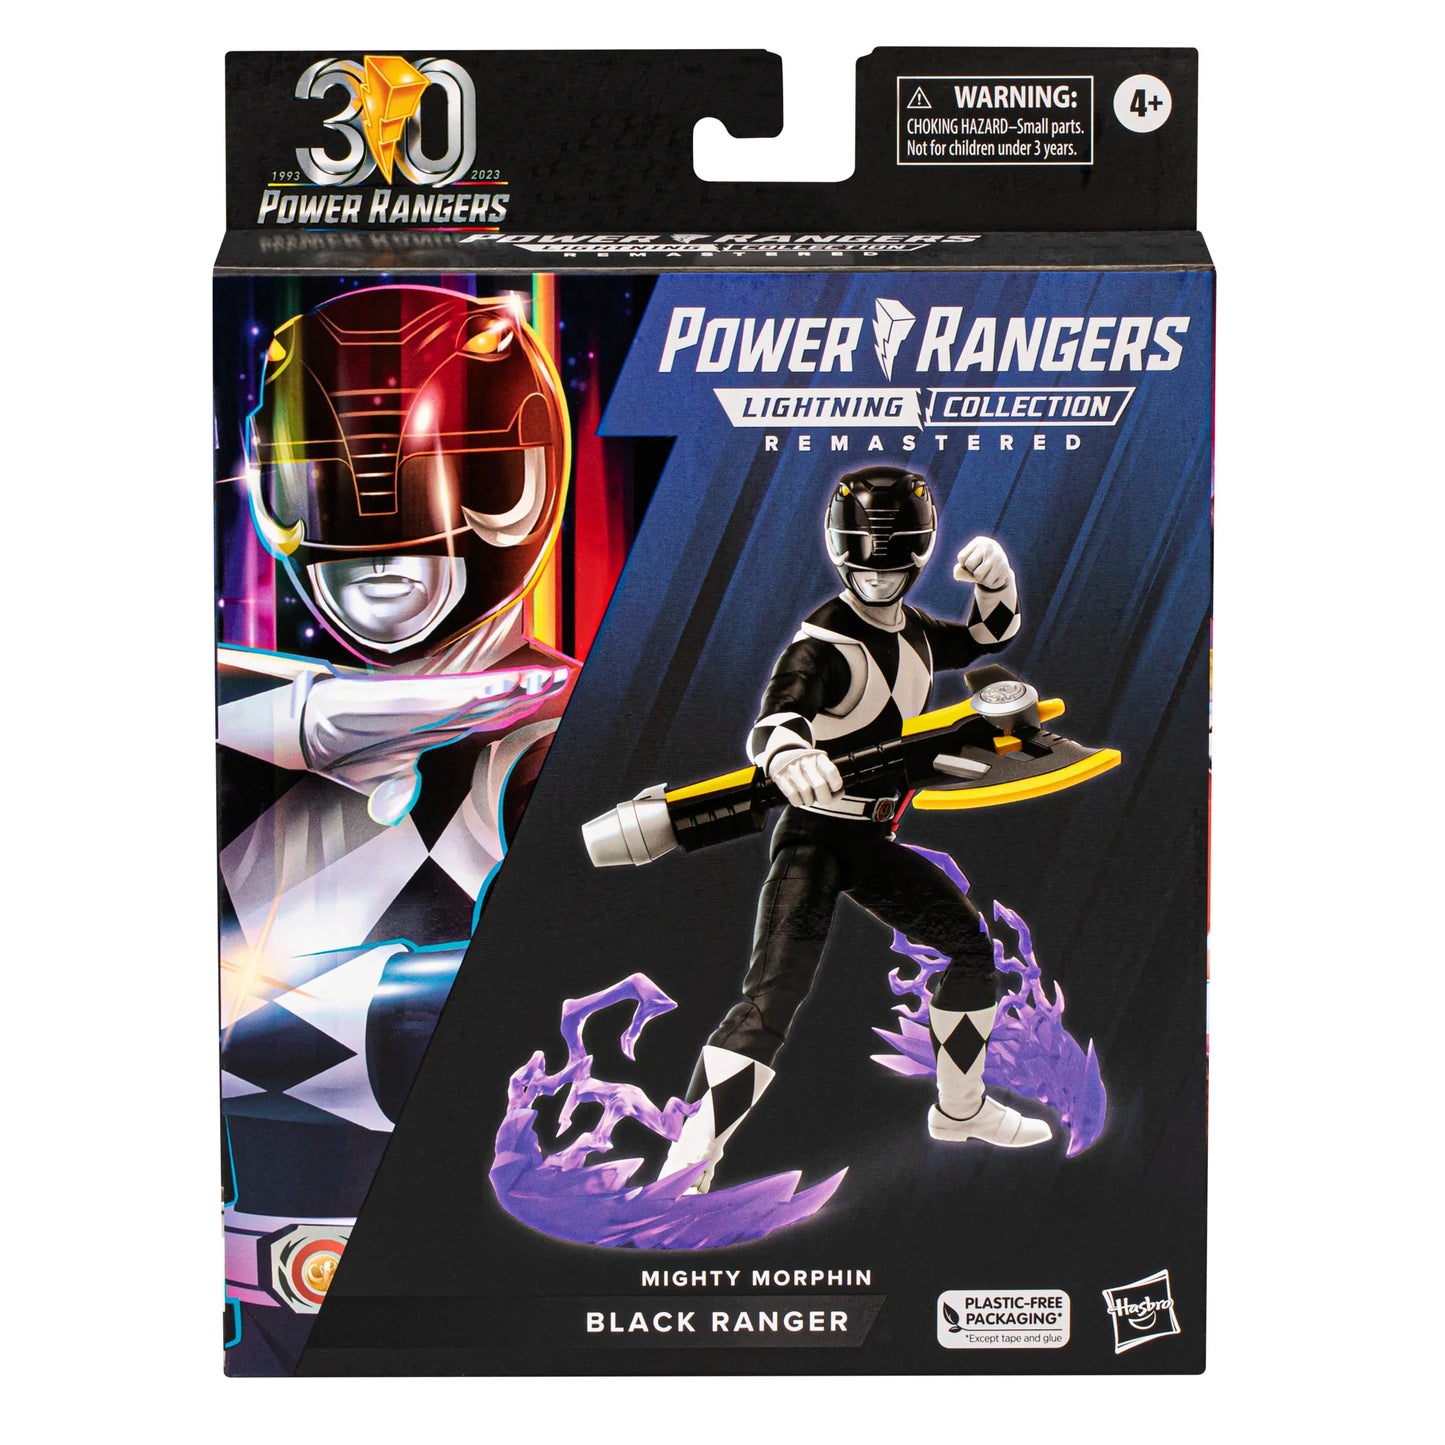 Power Rangers Lighting Collection REMASTERED Morphin Black Ranger